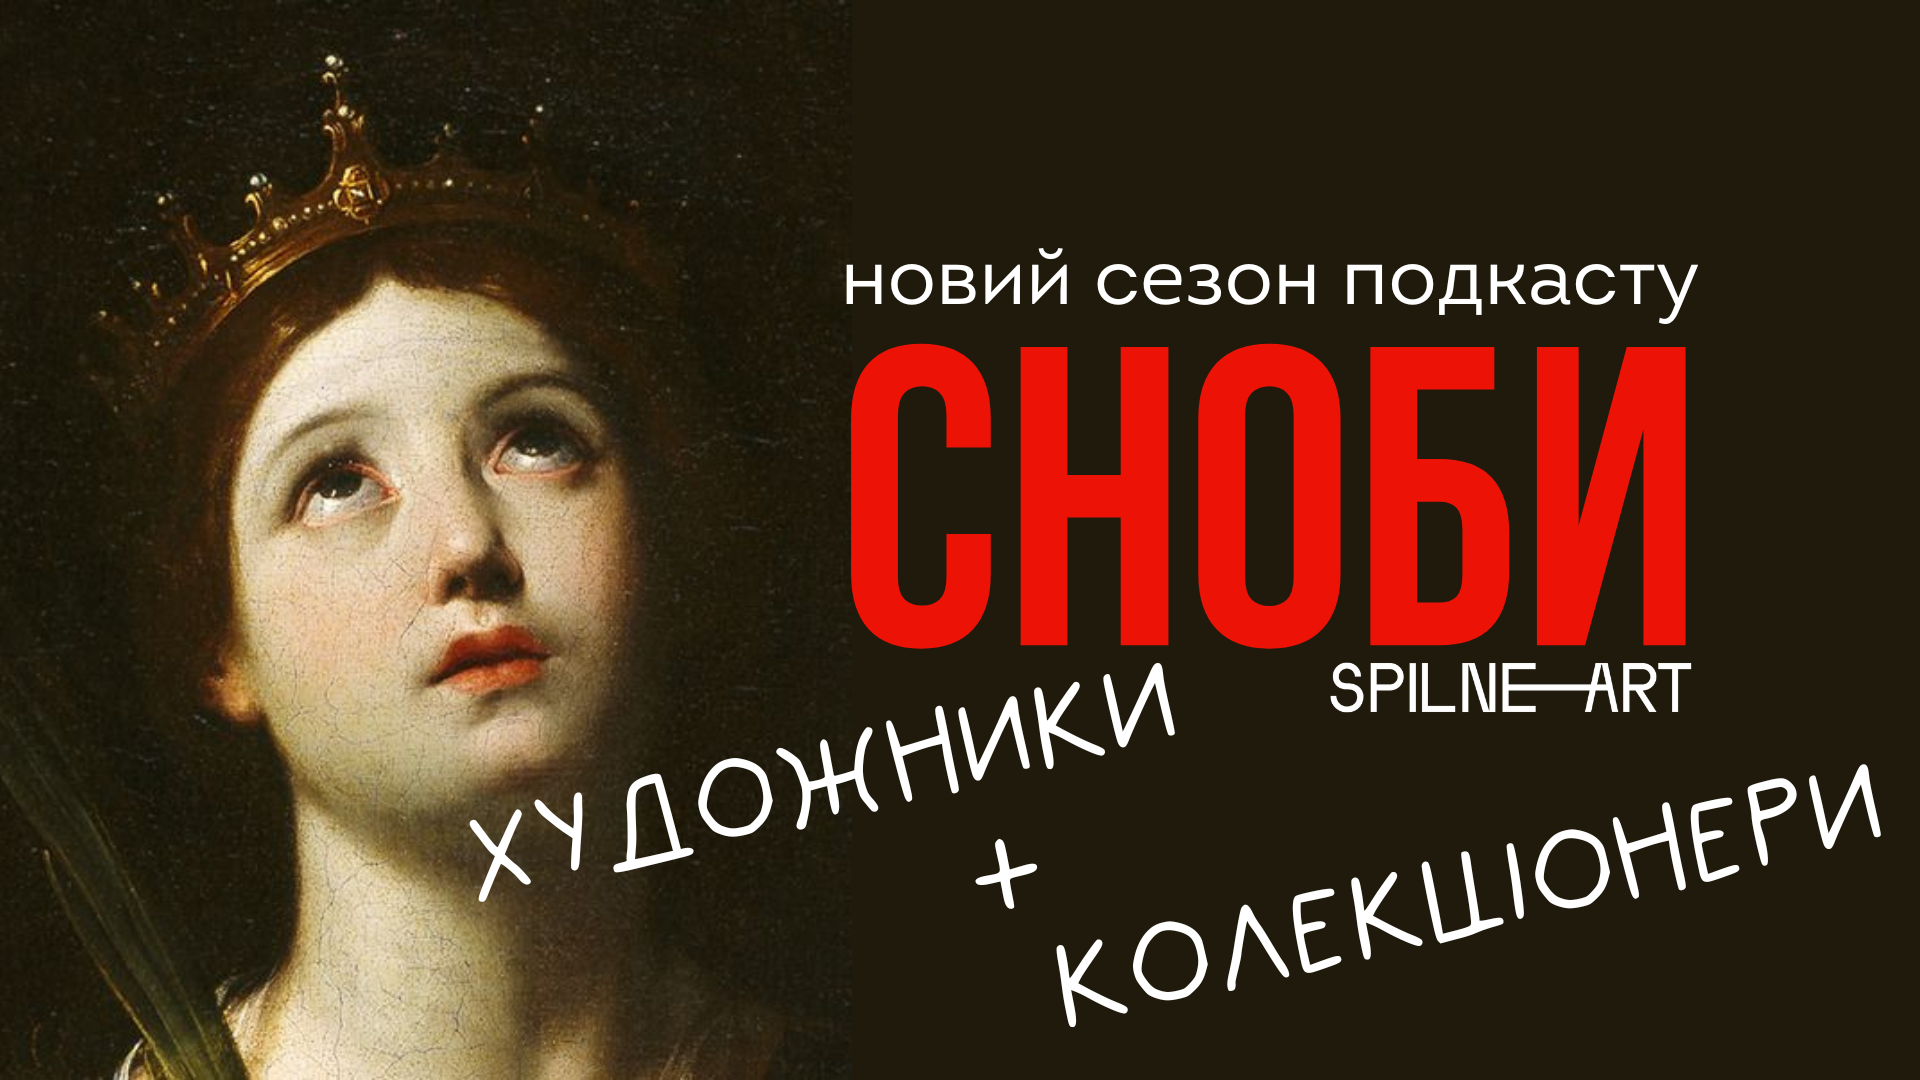 Подкаст про мистецтво «Сноби»: новий сезон з рубриками «Художники» та «Колекціонери» 